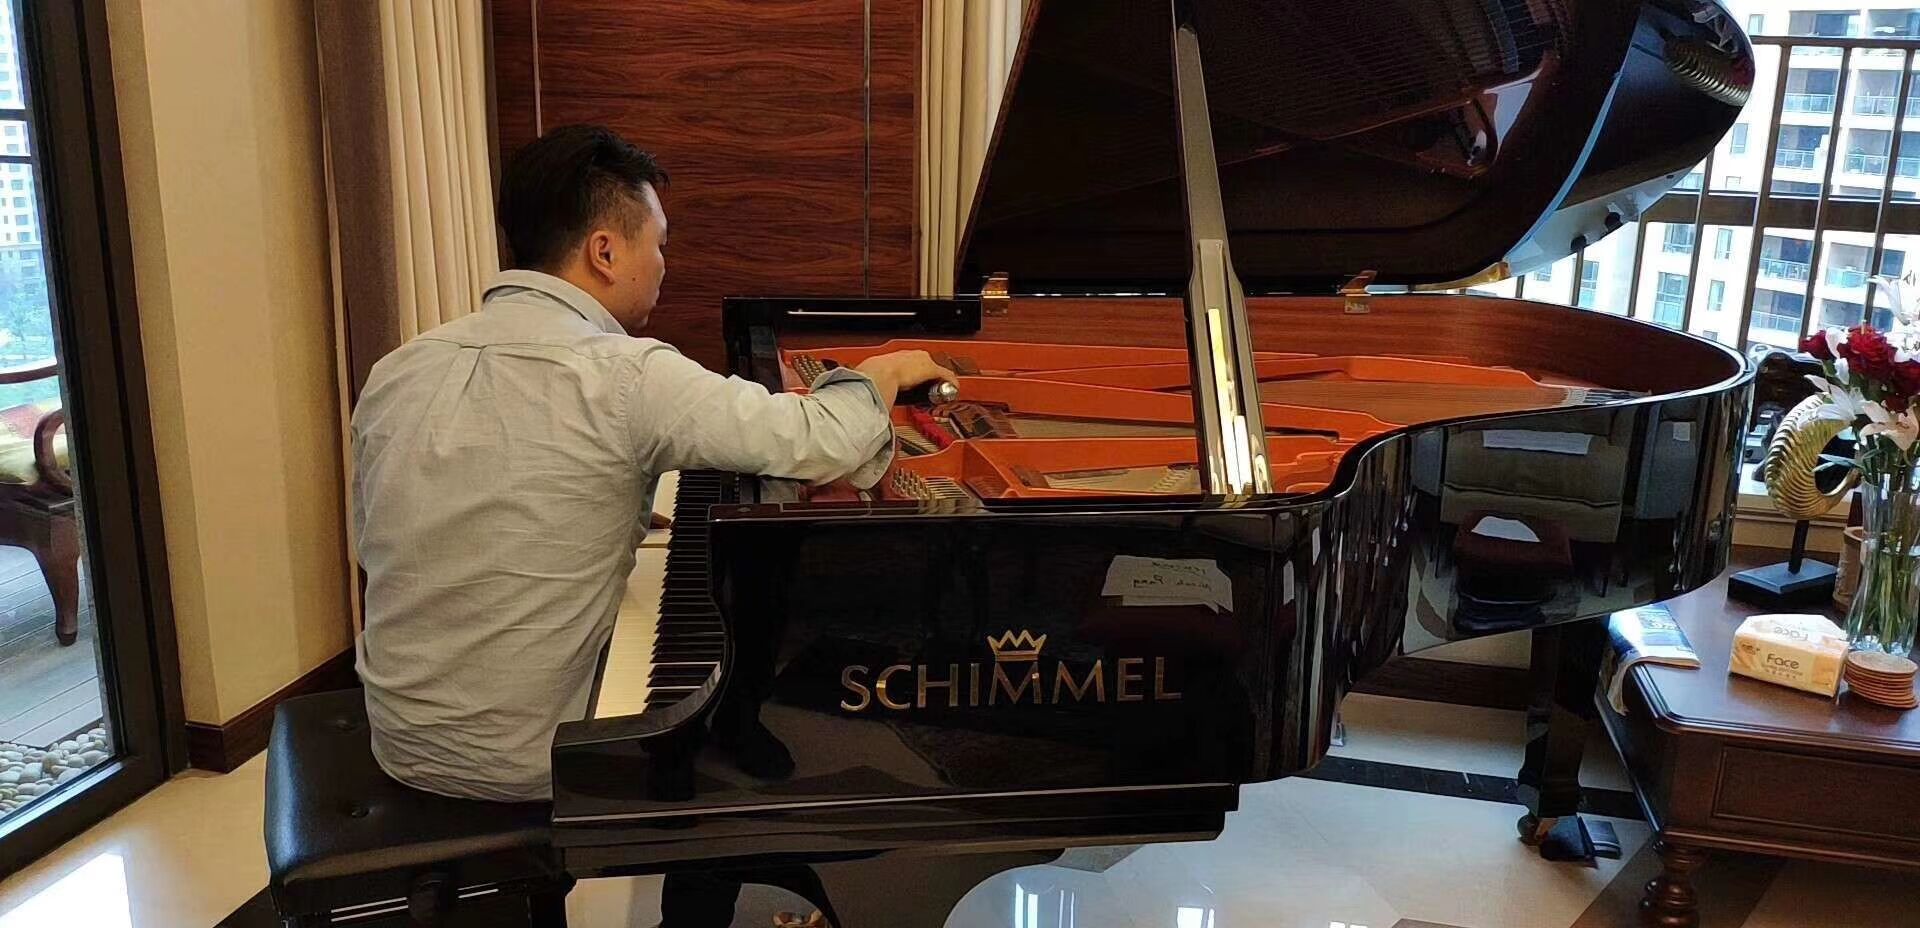 驻成都德国大使府邸的钢琴——舒密尔